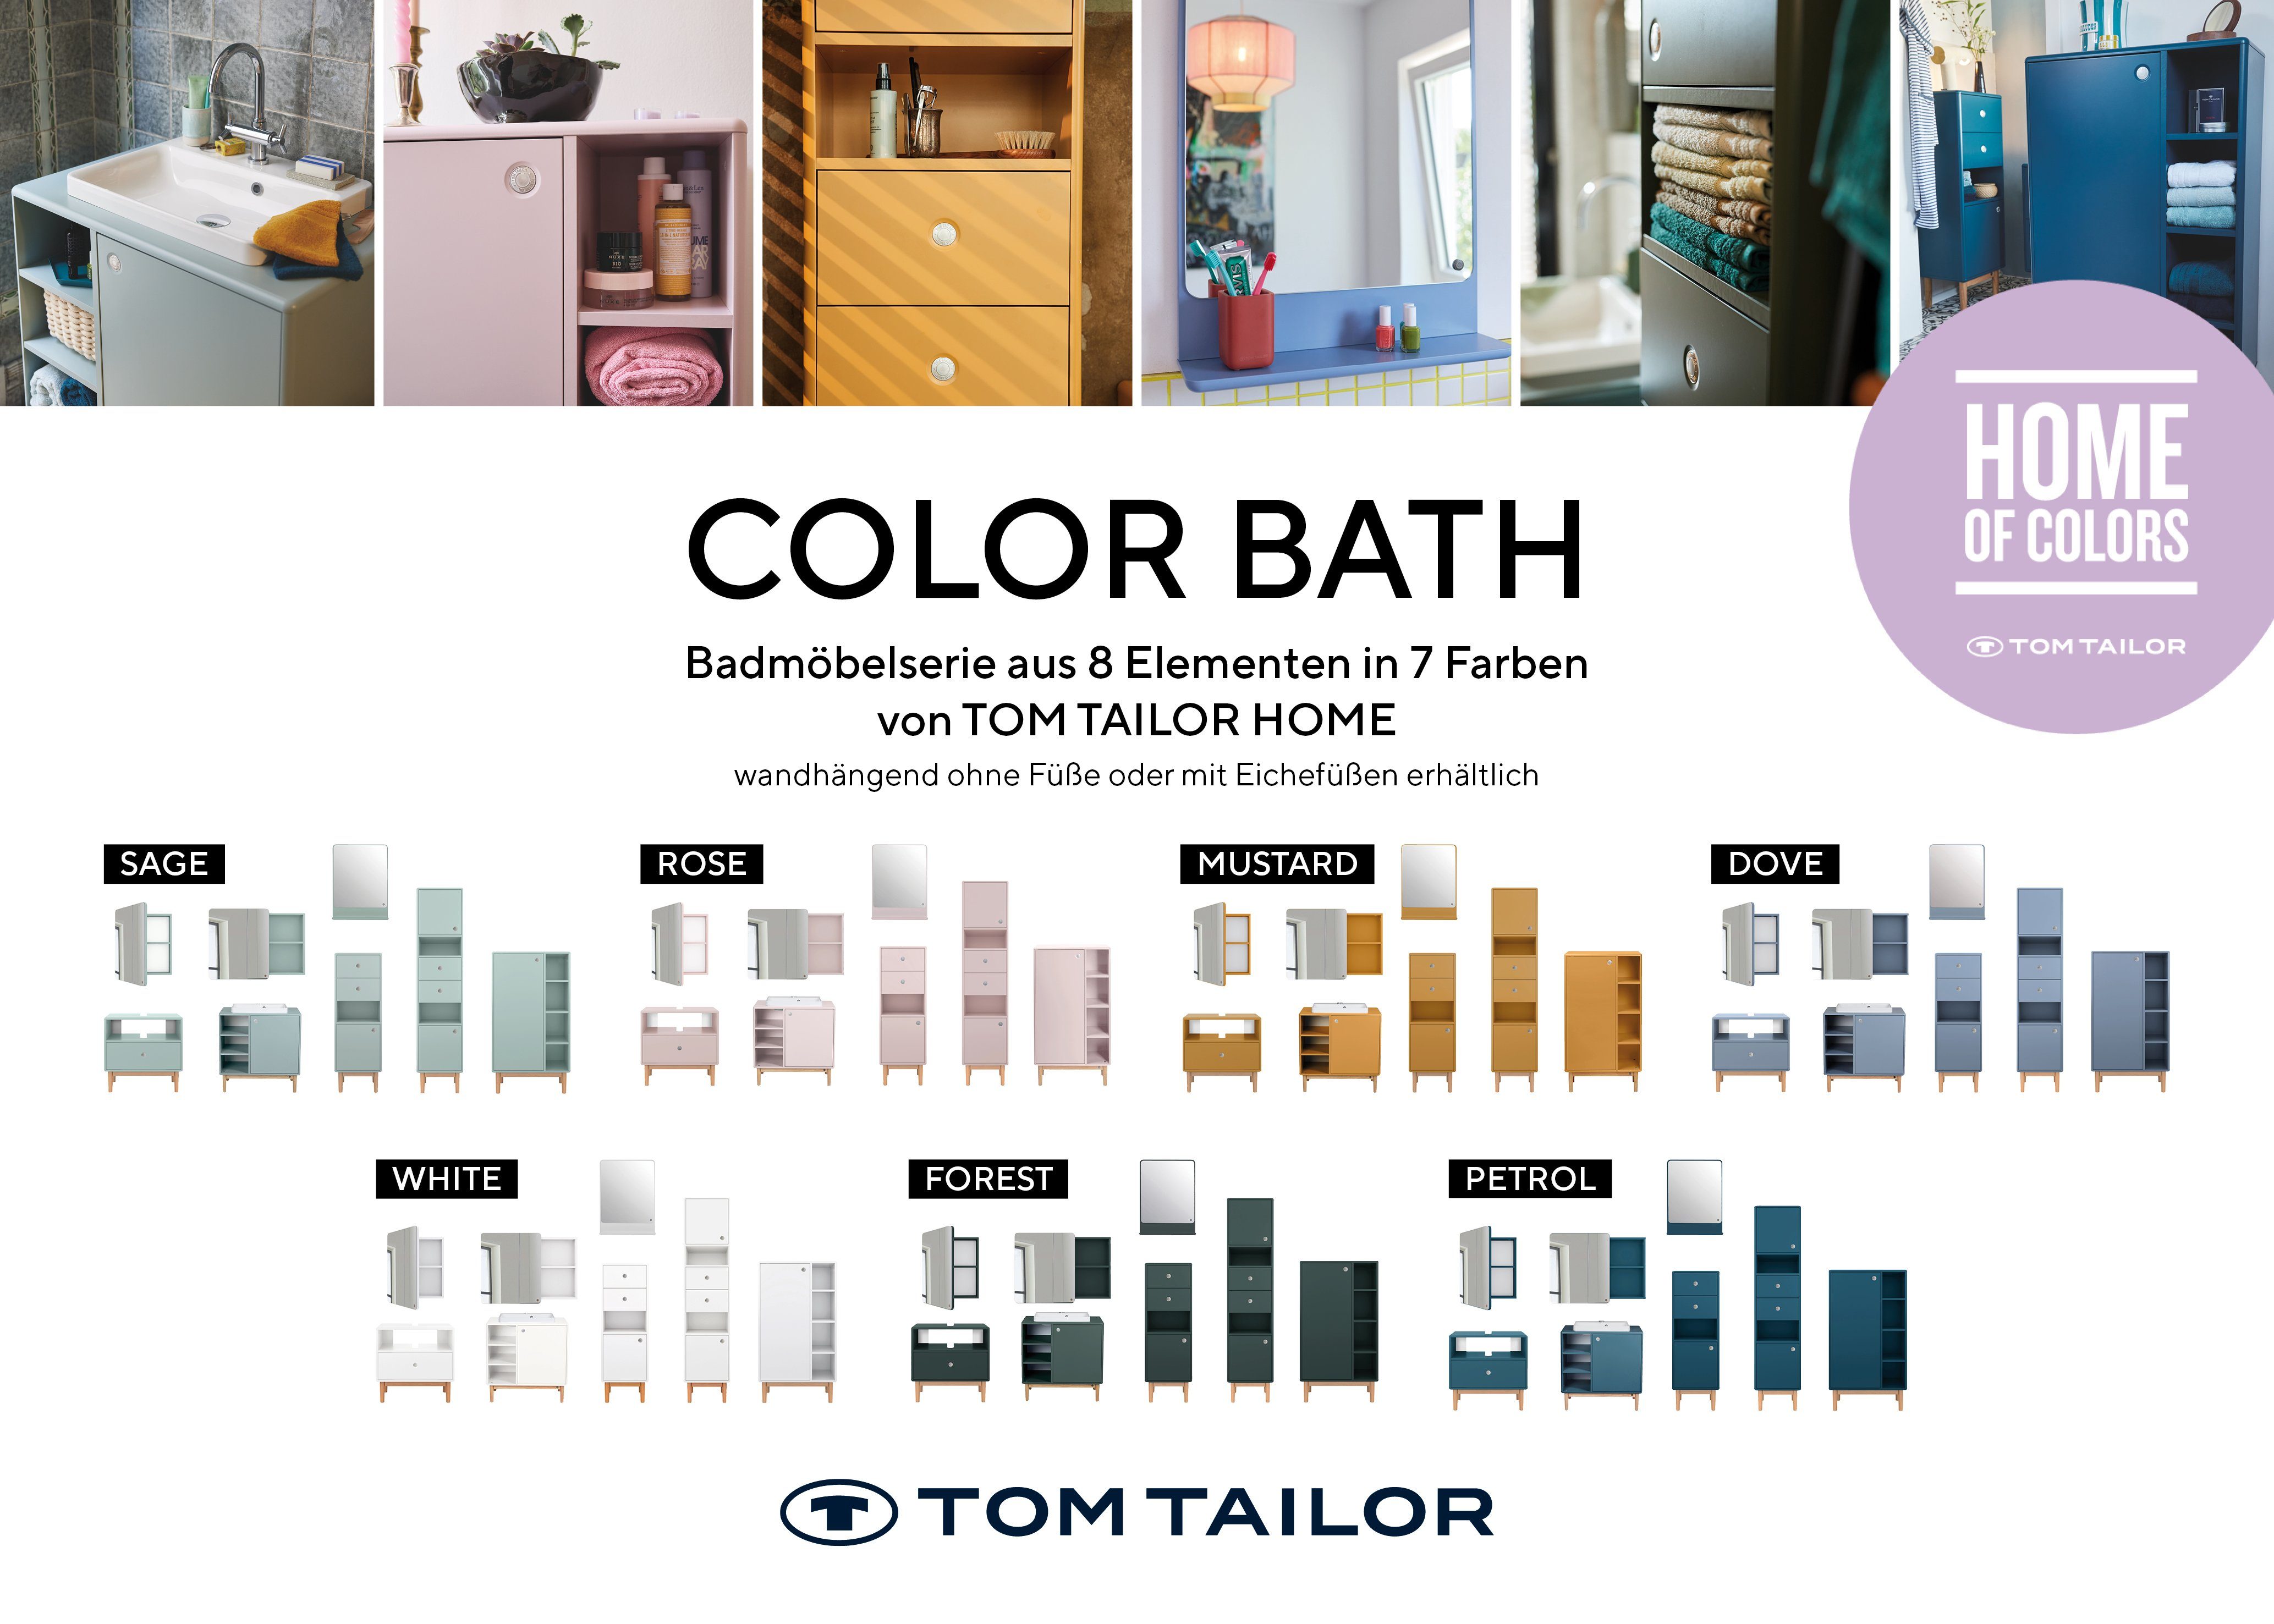 Farben TAILOR Mirror großer mit Ecken, Large Stauraum, MDF dove030 COLOR in - vielen attraktiven HOME BATH mit Badspiegel lackiert Badspiegel TOM gerundeten